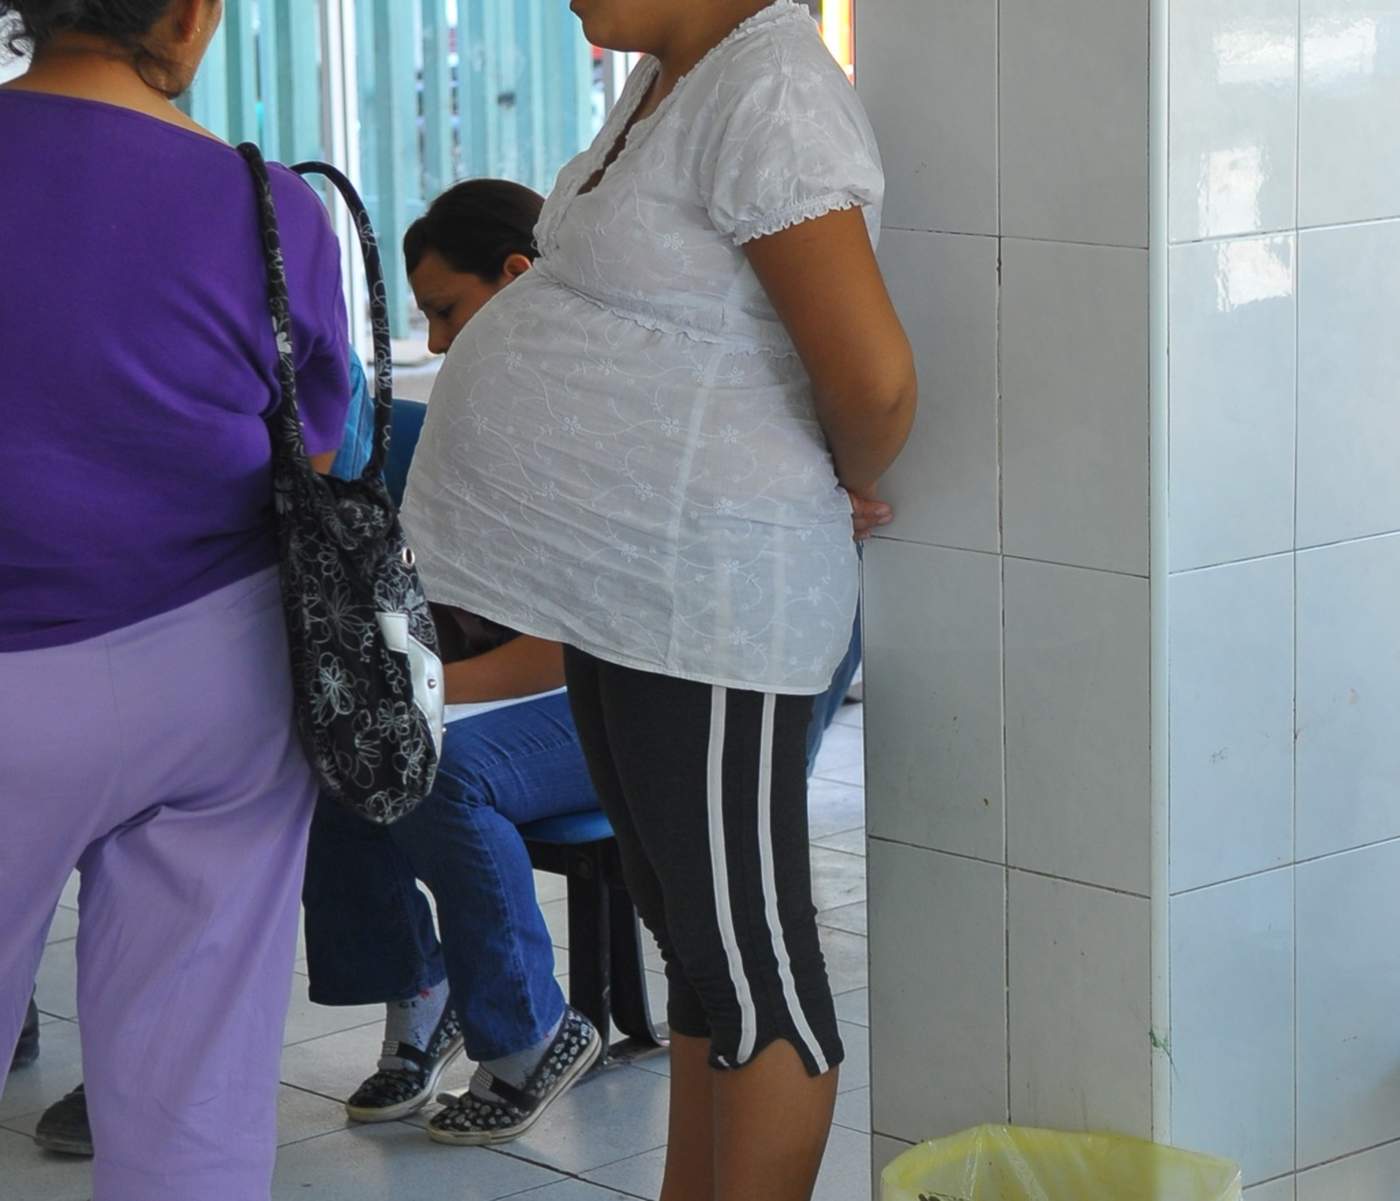 La Organización Mundial de la Salud establece como recomendación que la atención prenatal tenga un mínimo de ocho contactos, lo que puede reducir las muertes perinatales hasta en ocho por cada mil nacimientos. (ARCHIVO)